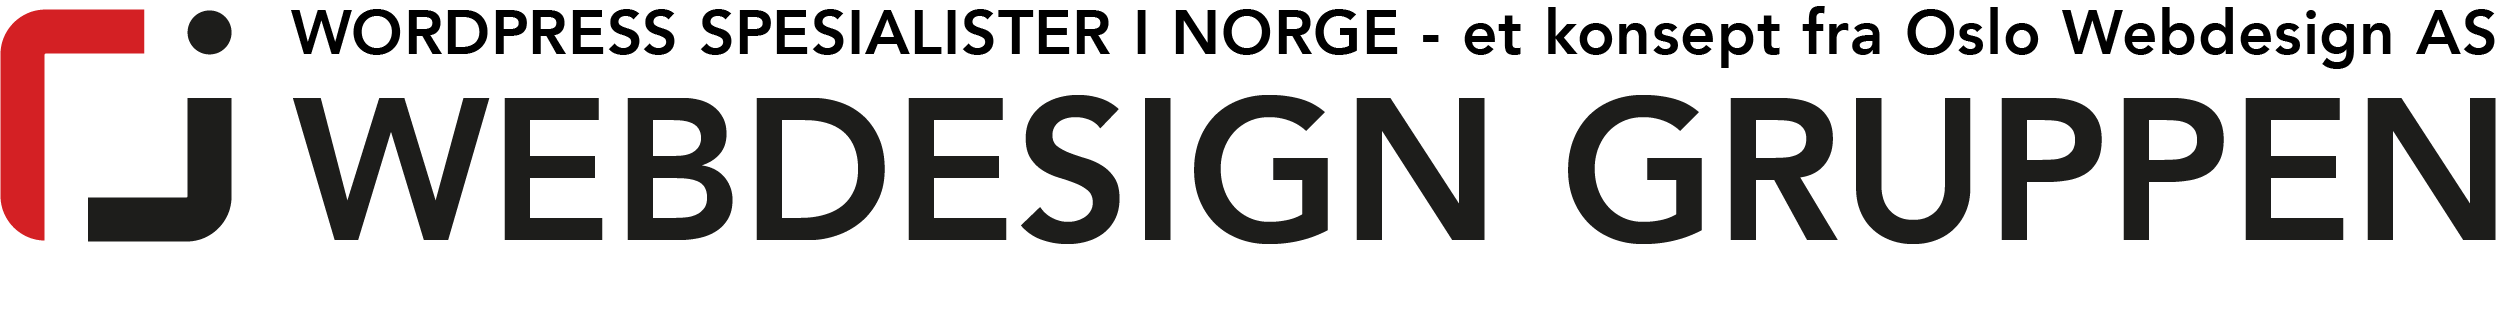 Logo | Webdesign Gruppen. Wordpress spsialister i Norge, Oslo, Kristiansand, Stavanger, Bergen, Trondhein og Nordland.